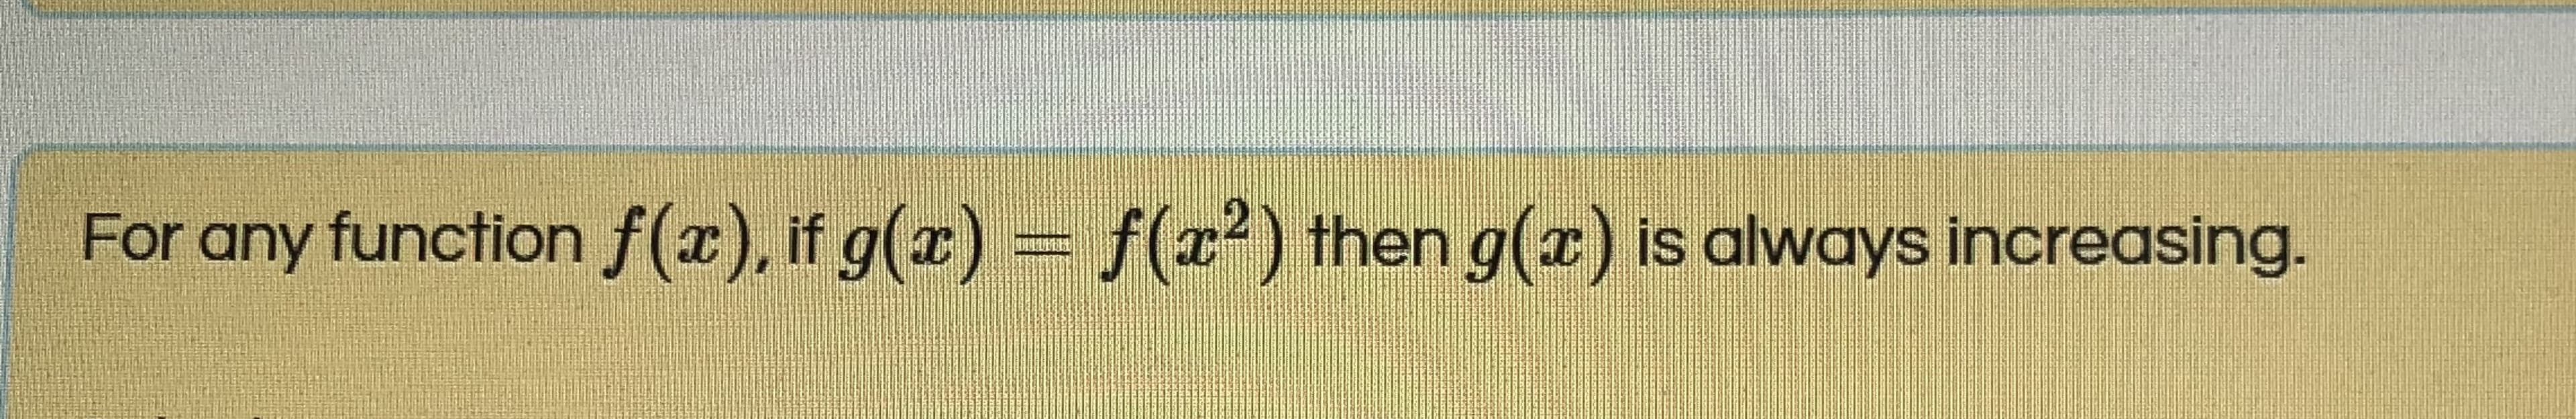 For any function f(r), if g(x)
= f(x²) then g(z) is always increasing.
